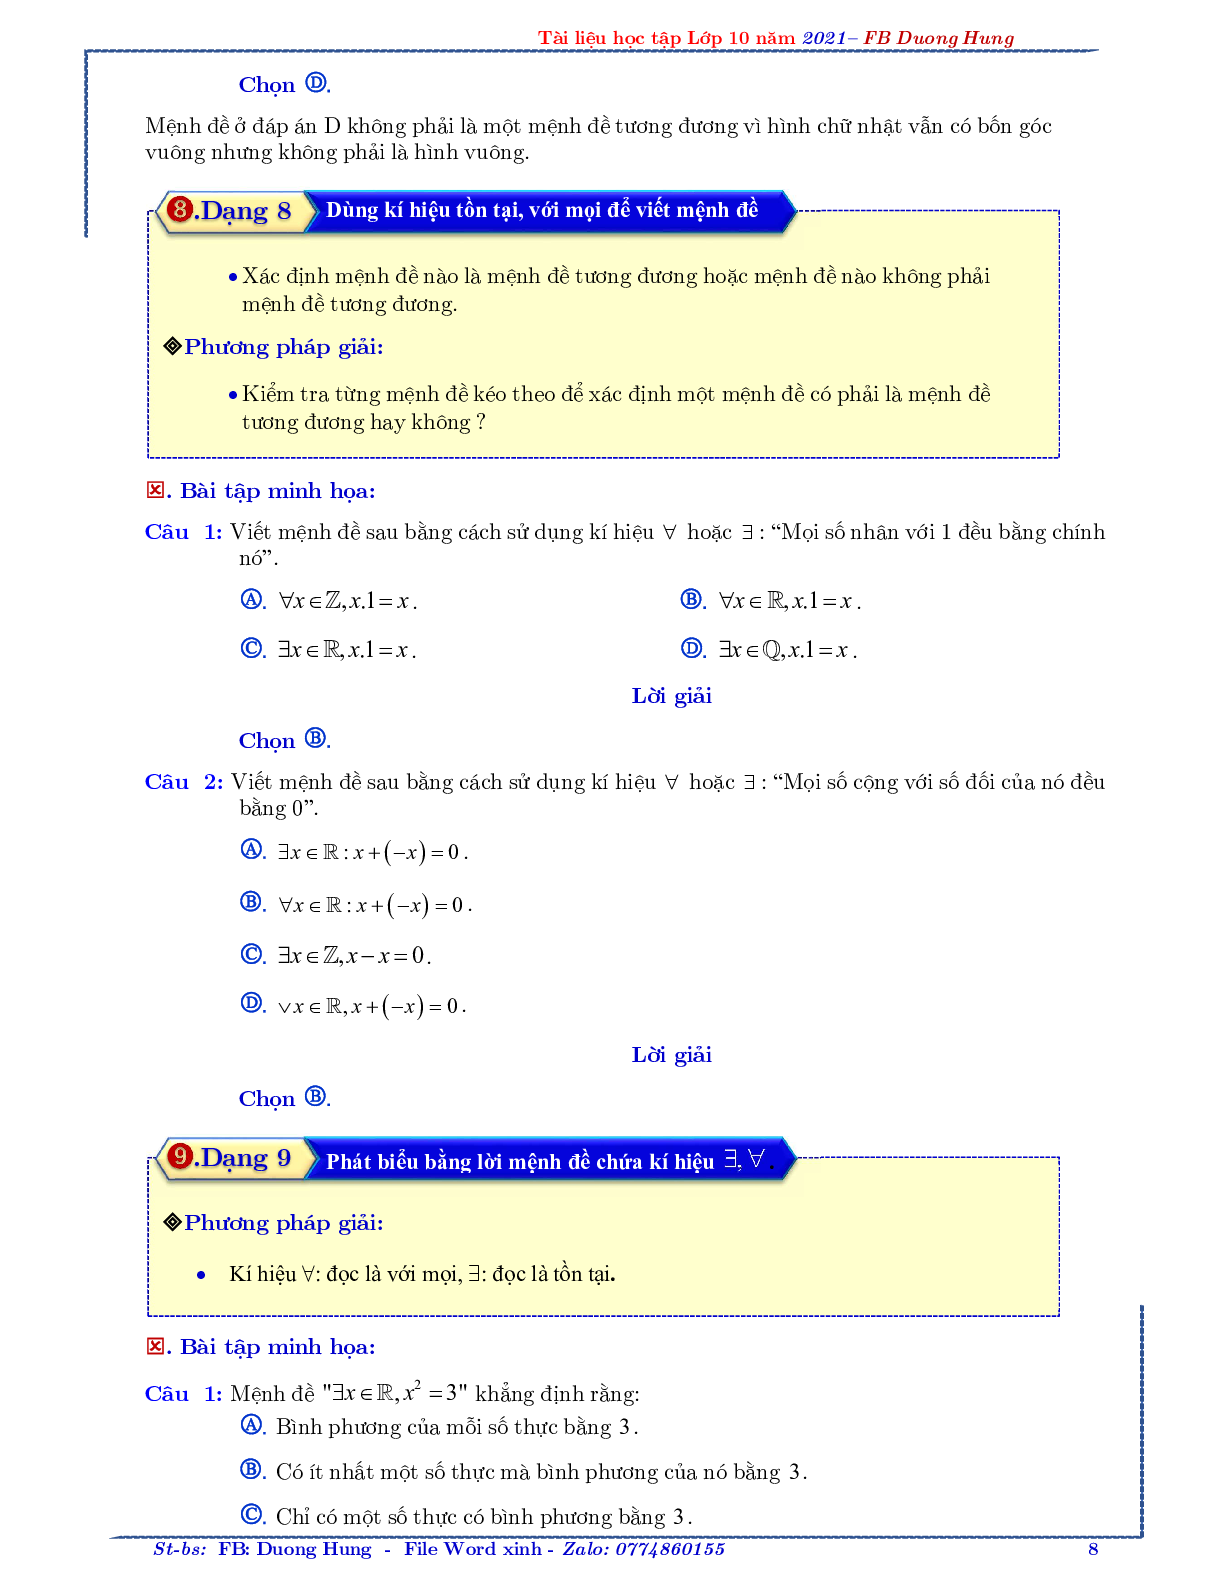 Chuyên đề về mệnh đề và tập hợp - bản 1 (trang 8)